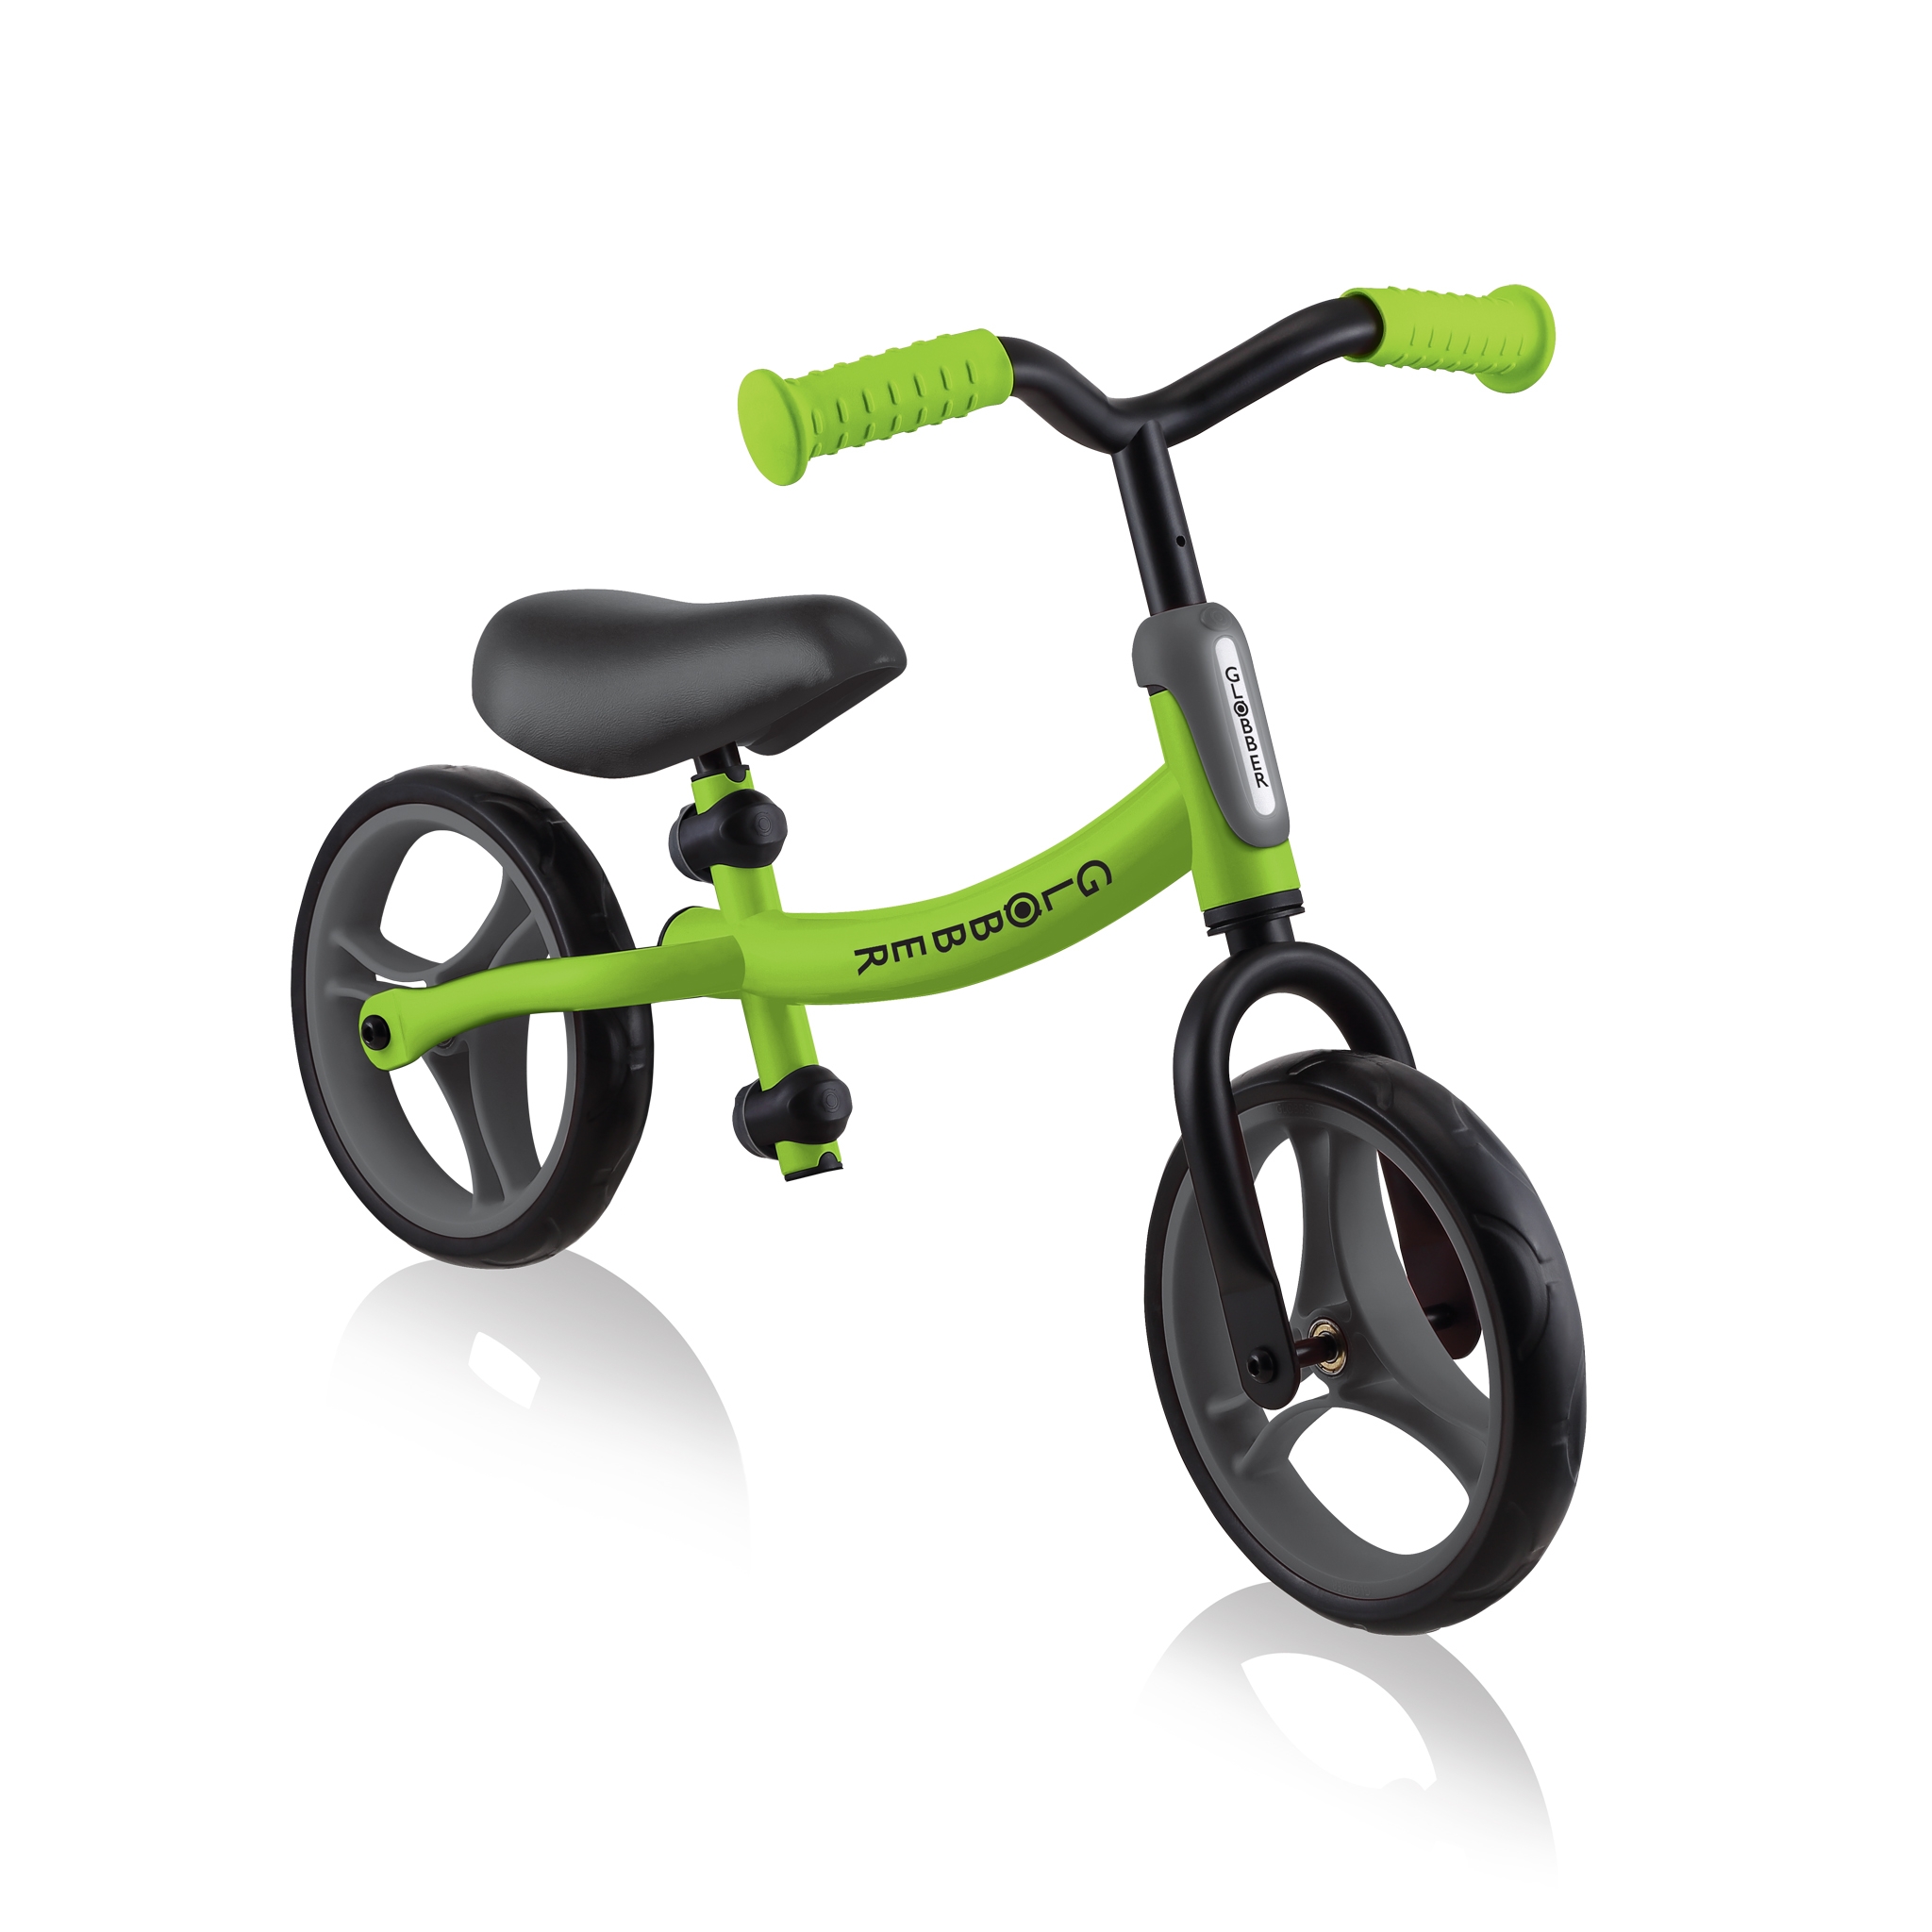 GO-BIKE-best-balance-bike-for-toddlers 0